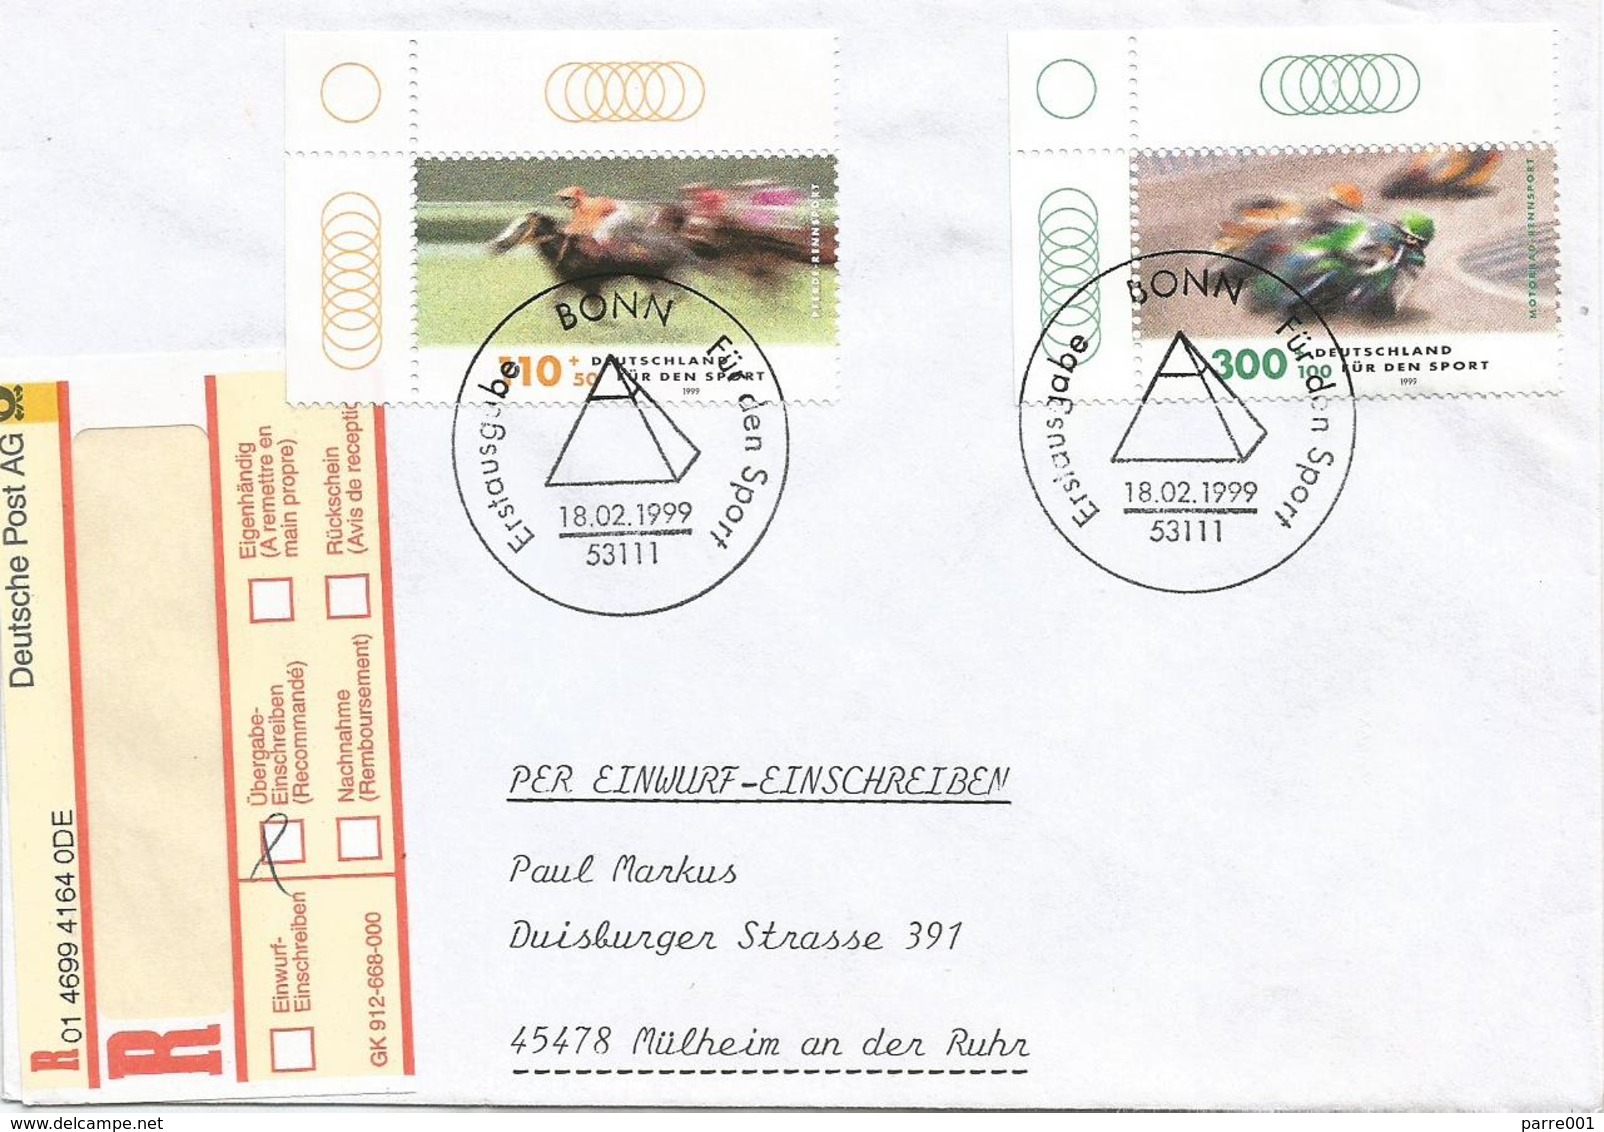 Germany 1999 Bonn Mottorrad Rennsport Moto Horse Jumping FDC Registered Cover - Moto